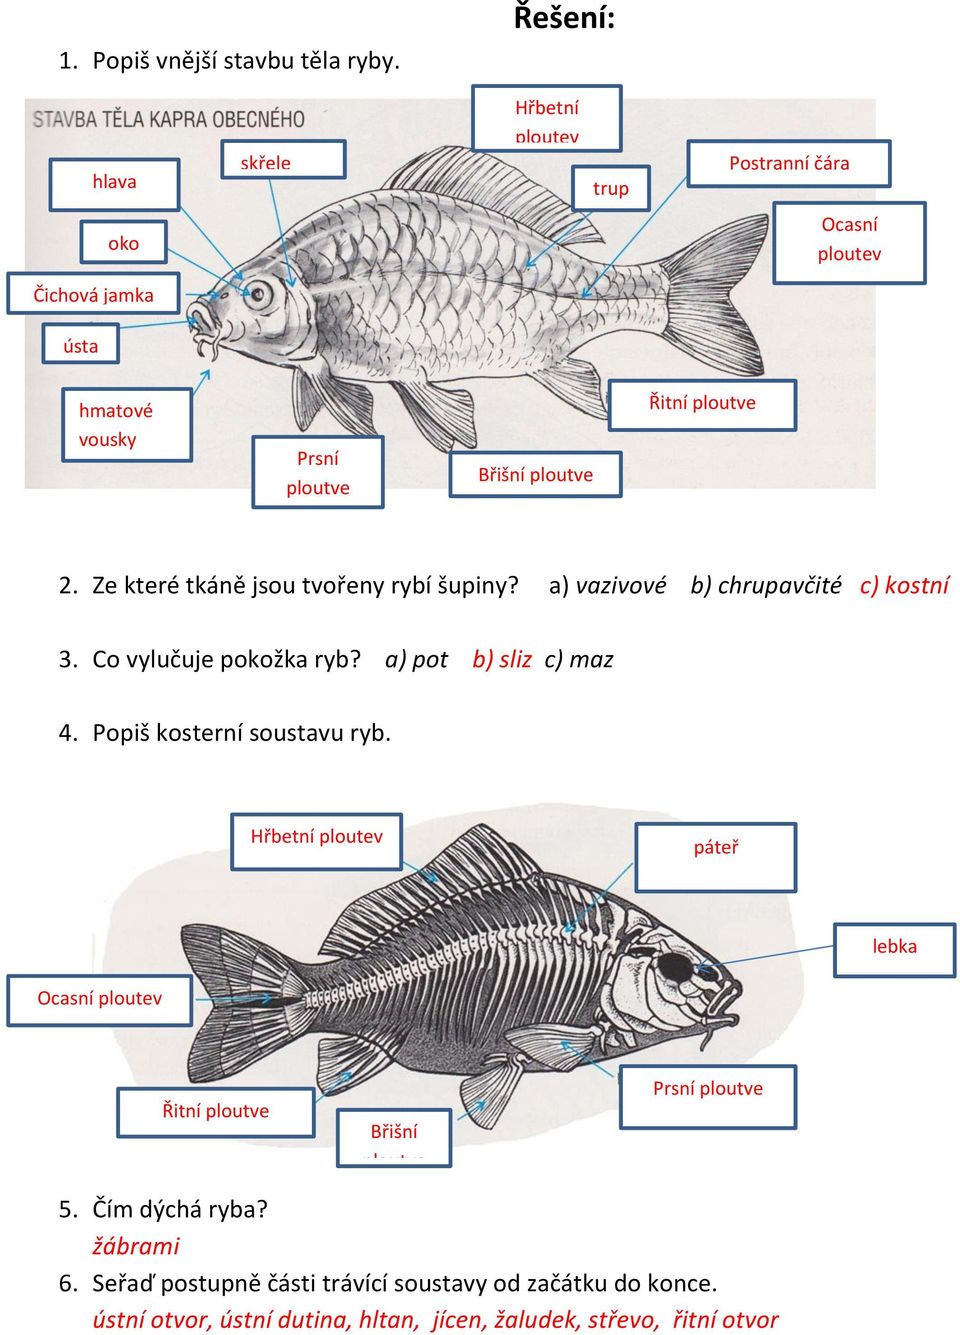 2. Ze které tkáně jsou tvořeny rybí šupiny? a) vazivové b) chrupavčité c) kostní 3. Co vylučuje pokožka ryb? a) pot b) sliz c) maz 4.